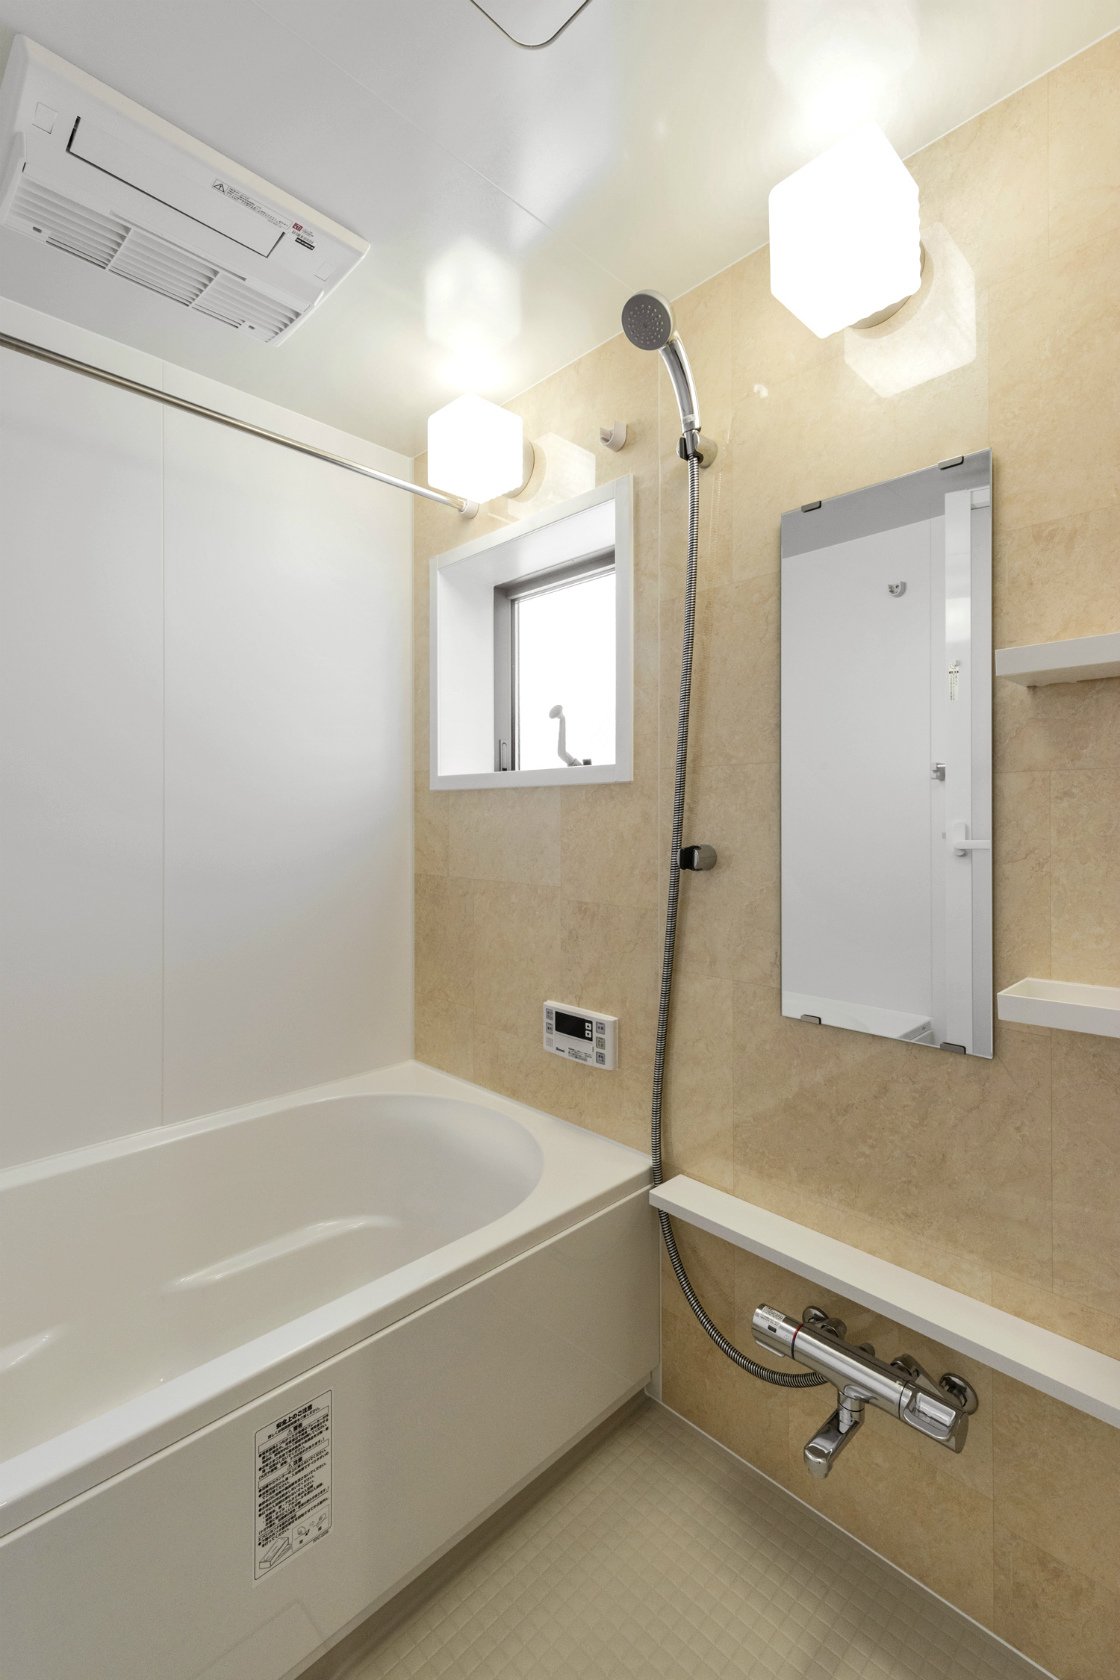 名古屋市北区のメゾネット賃貸アパートのナチュラルテイストのゆったりとした浴室